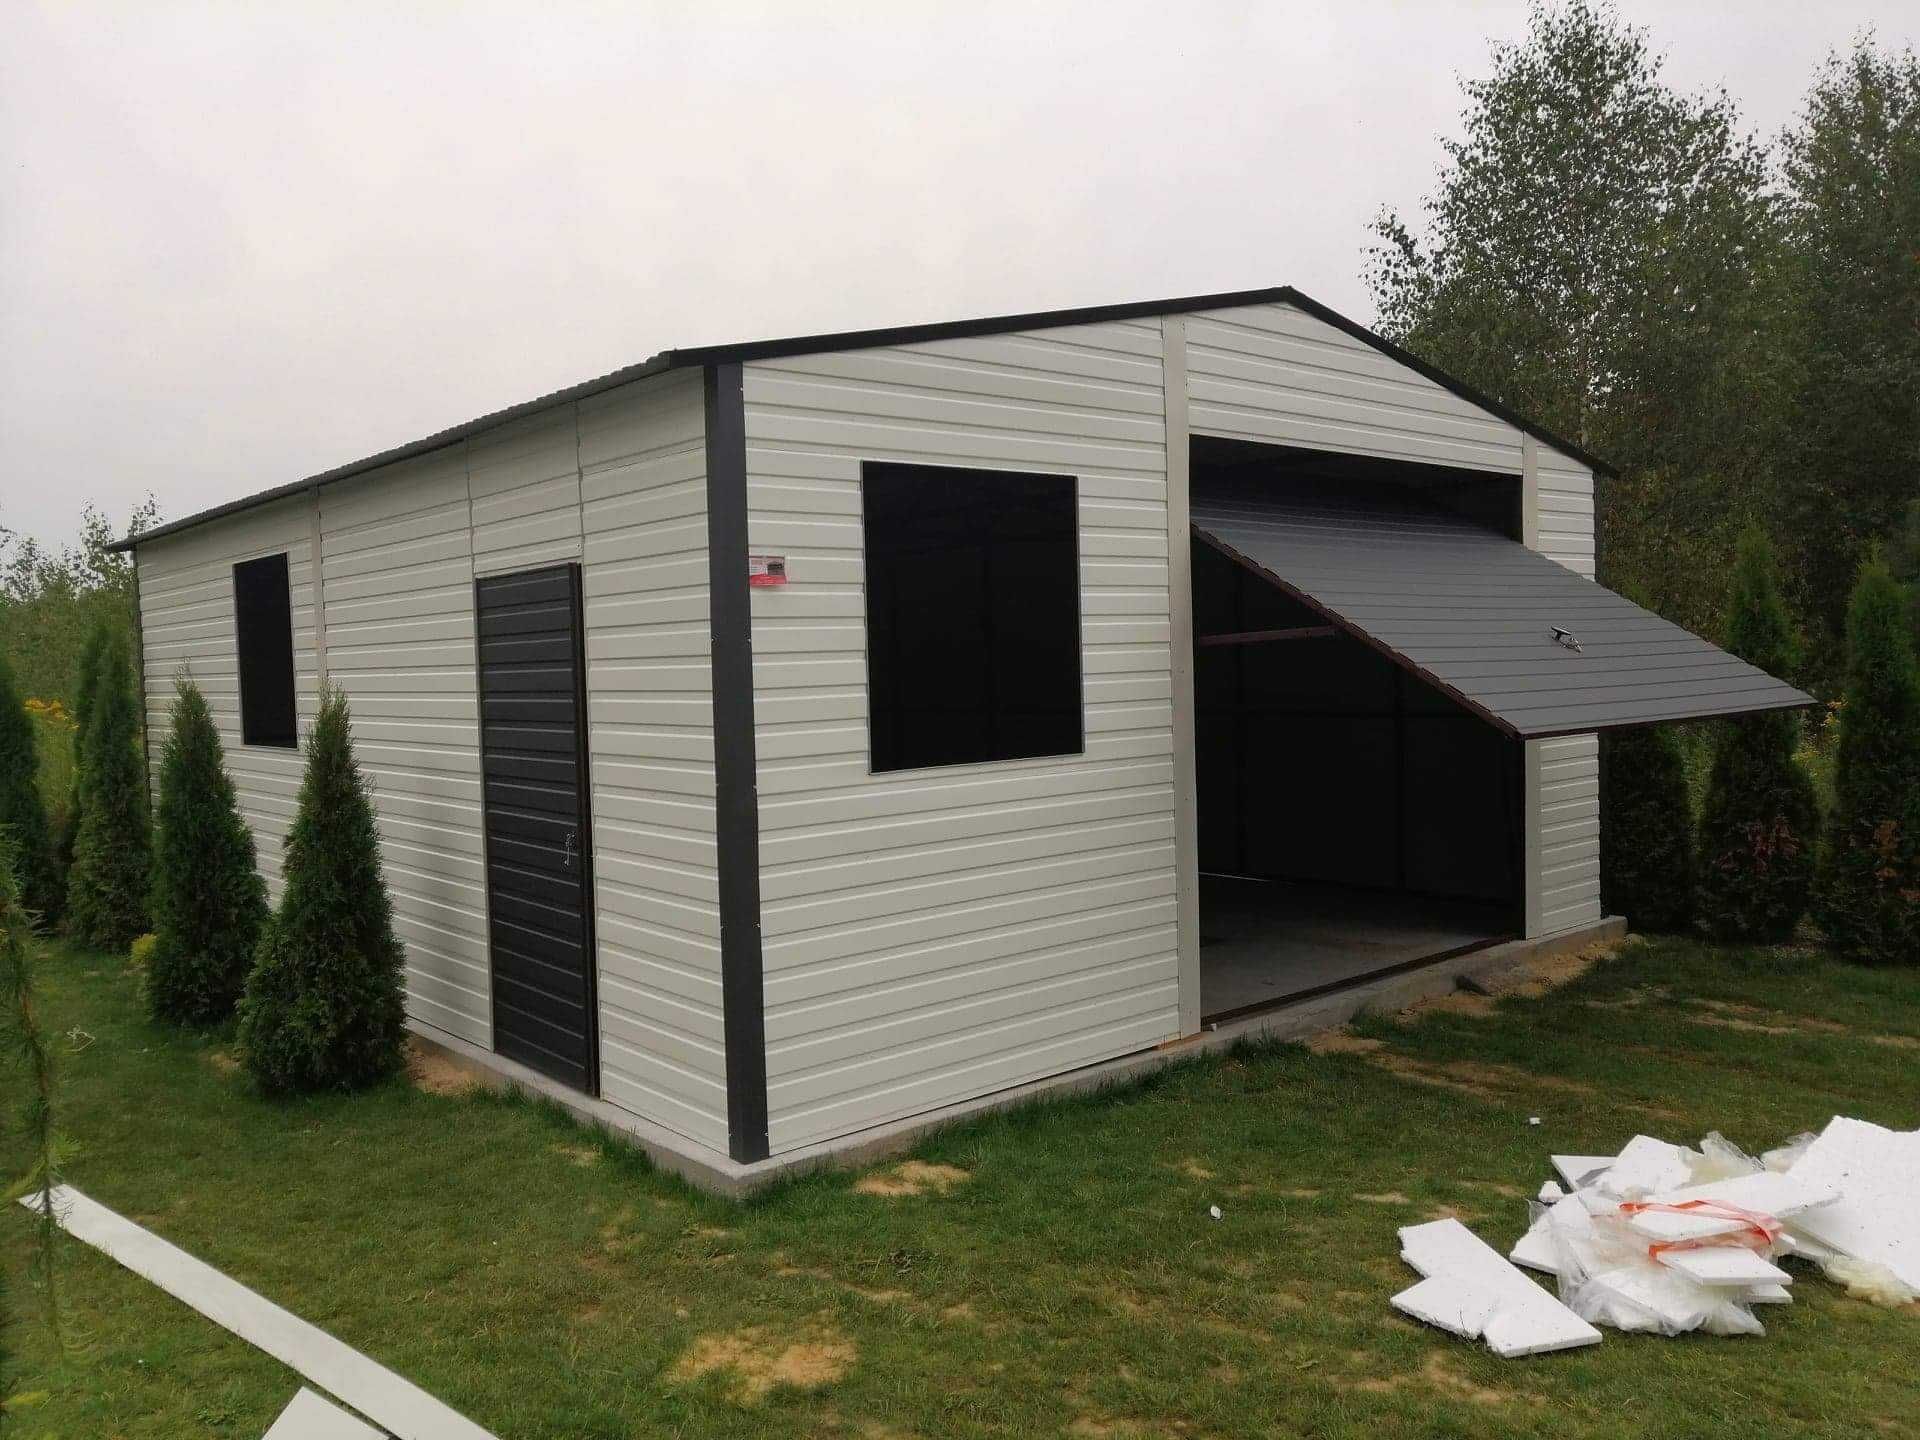 Garaż drewnopodobny 6x5, dach dwuspadowy,garaże blaszane 6x6, 5x6, 7x6